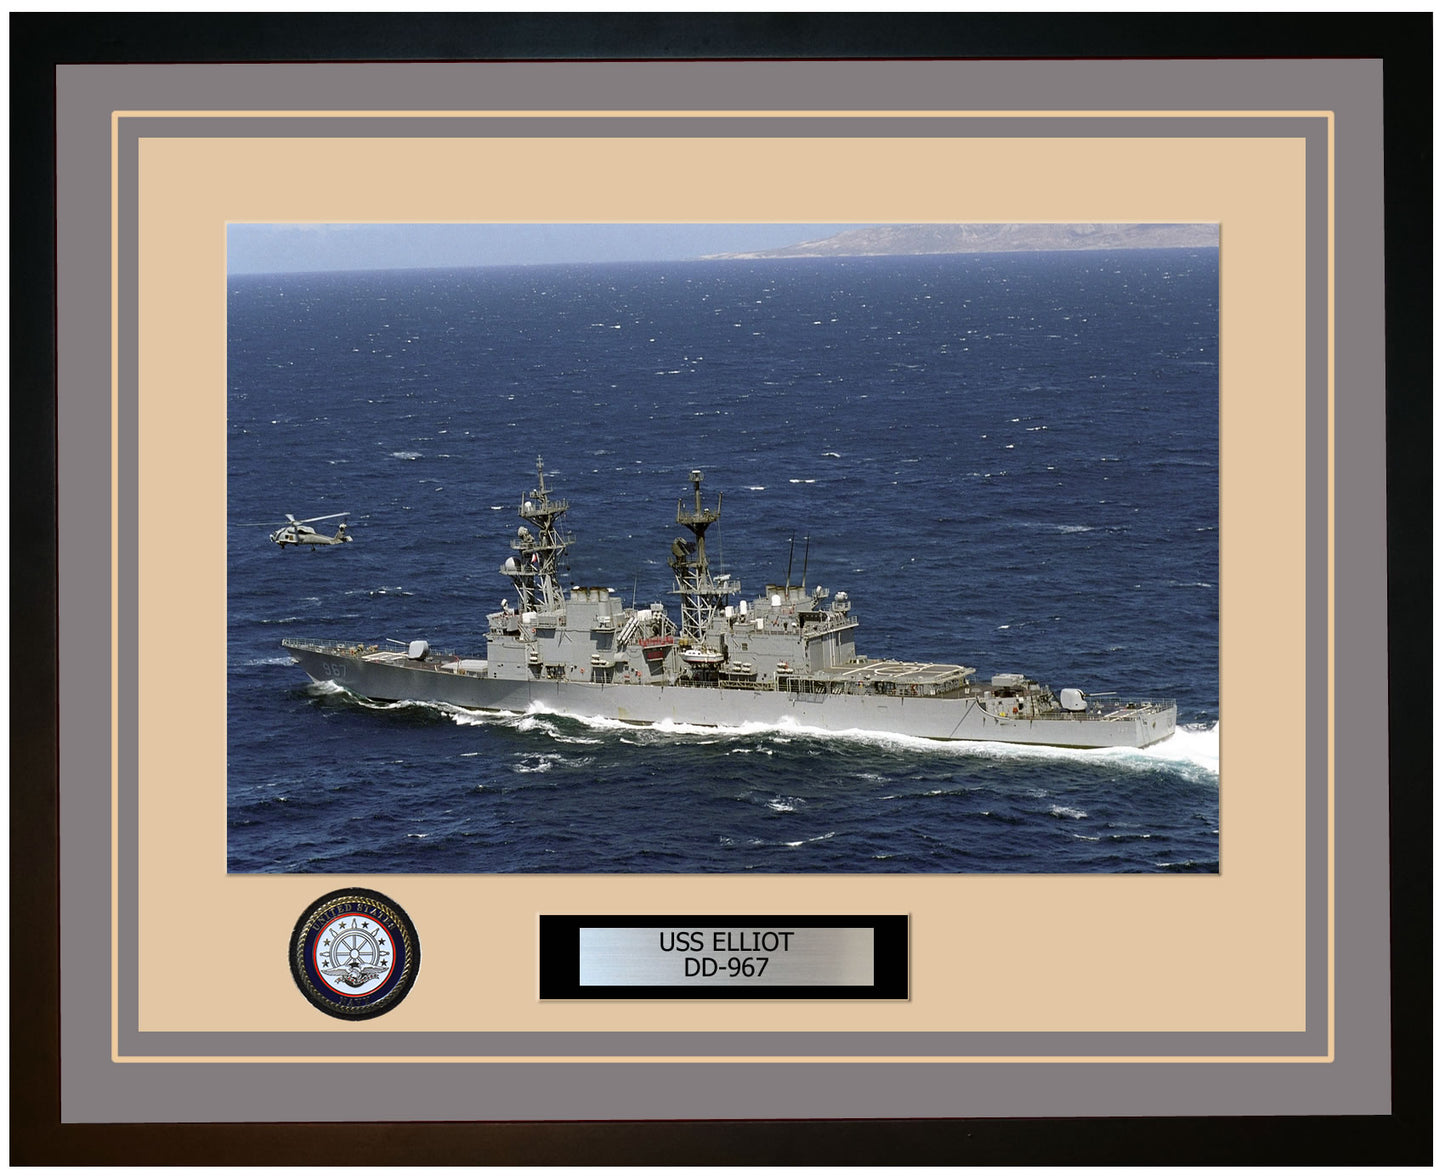 USS ELLIOT DD-967 Framed Navy Ship Photo Grey